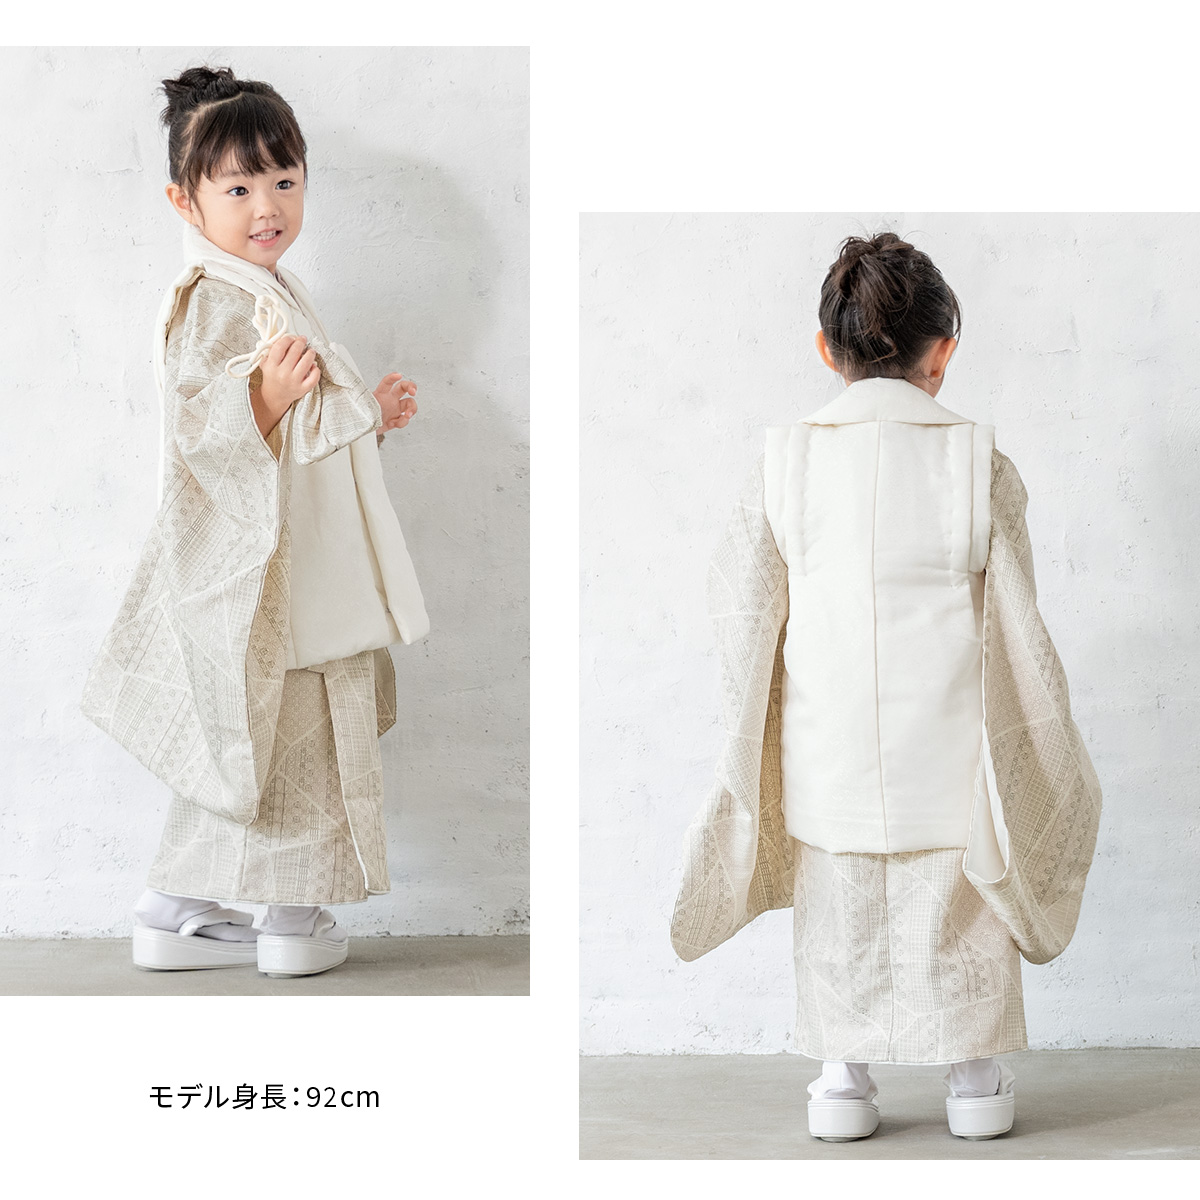 七五三 着物 3歳 販売 女の子 三歳 着物セット 被布セット 白 ベージュ 